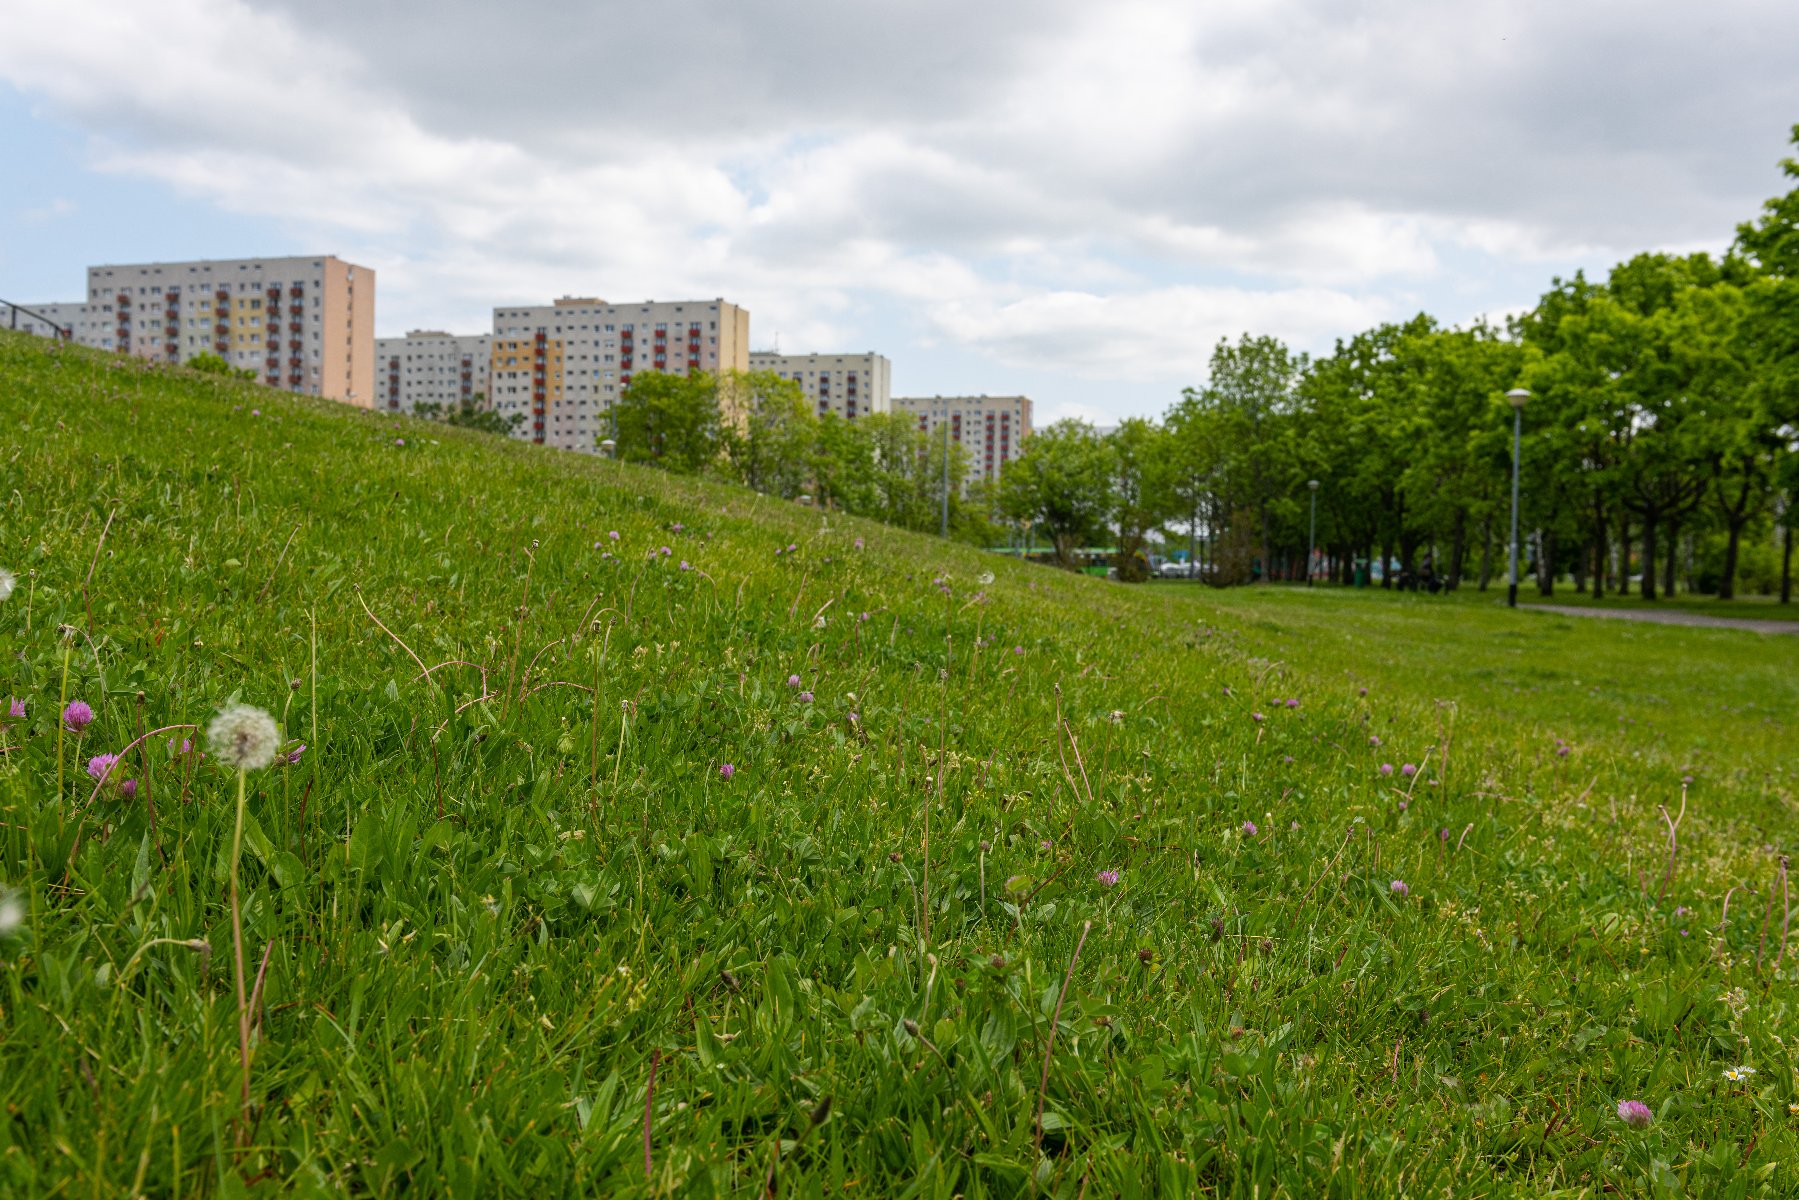 Co z koszeniem trawników na miejskich terenach? Miasto zabrało głos